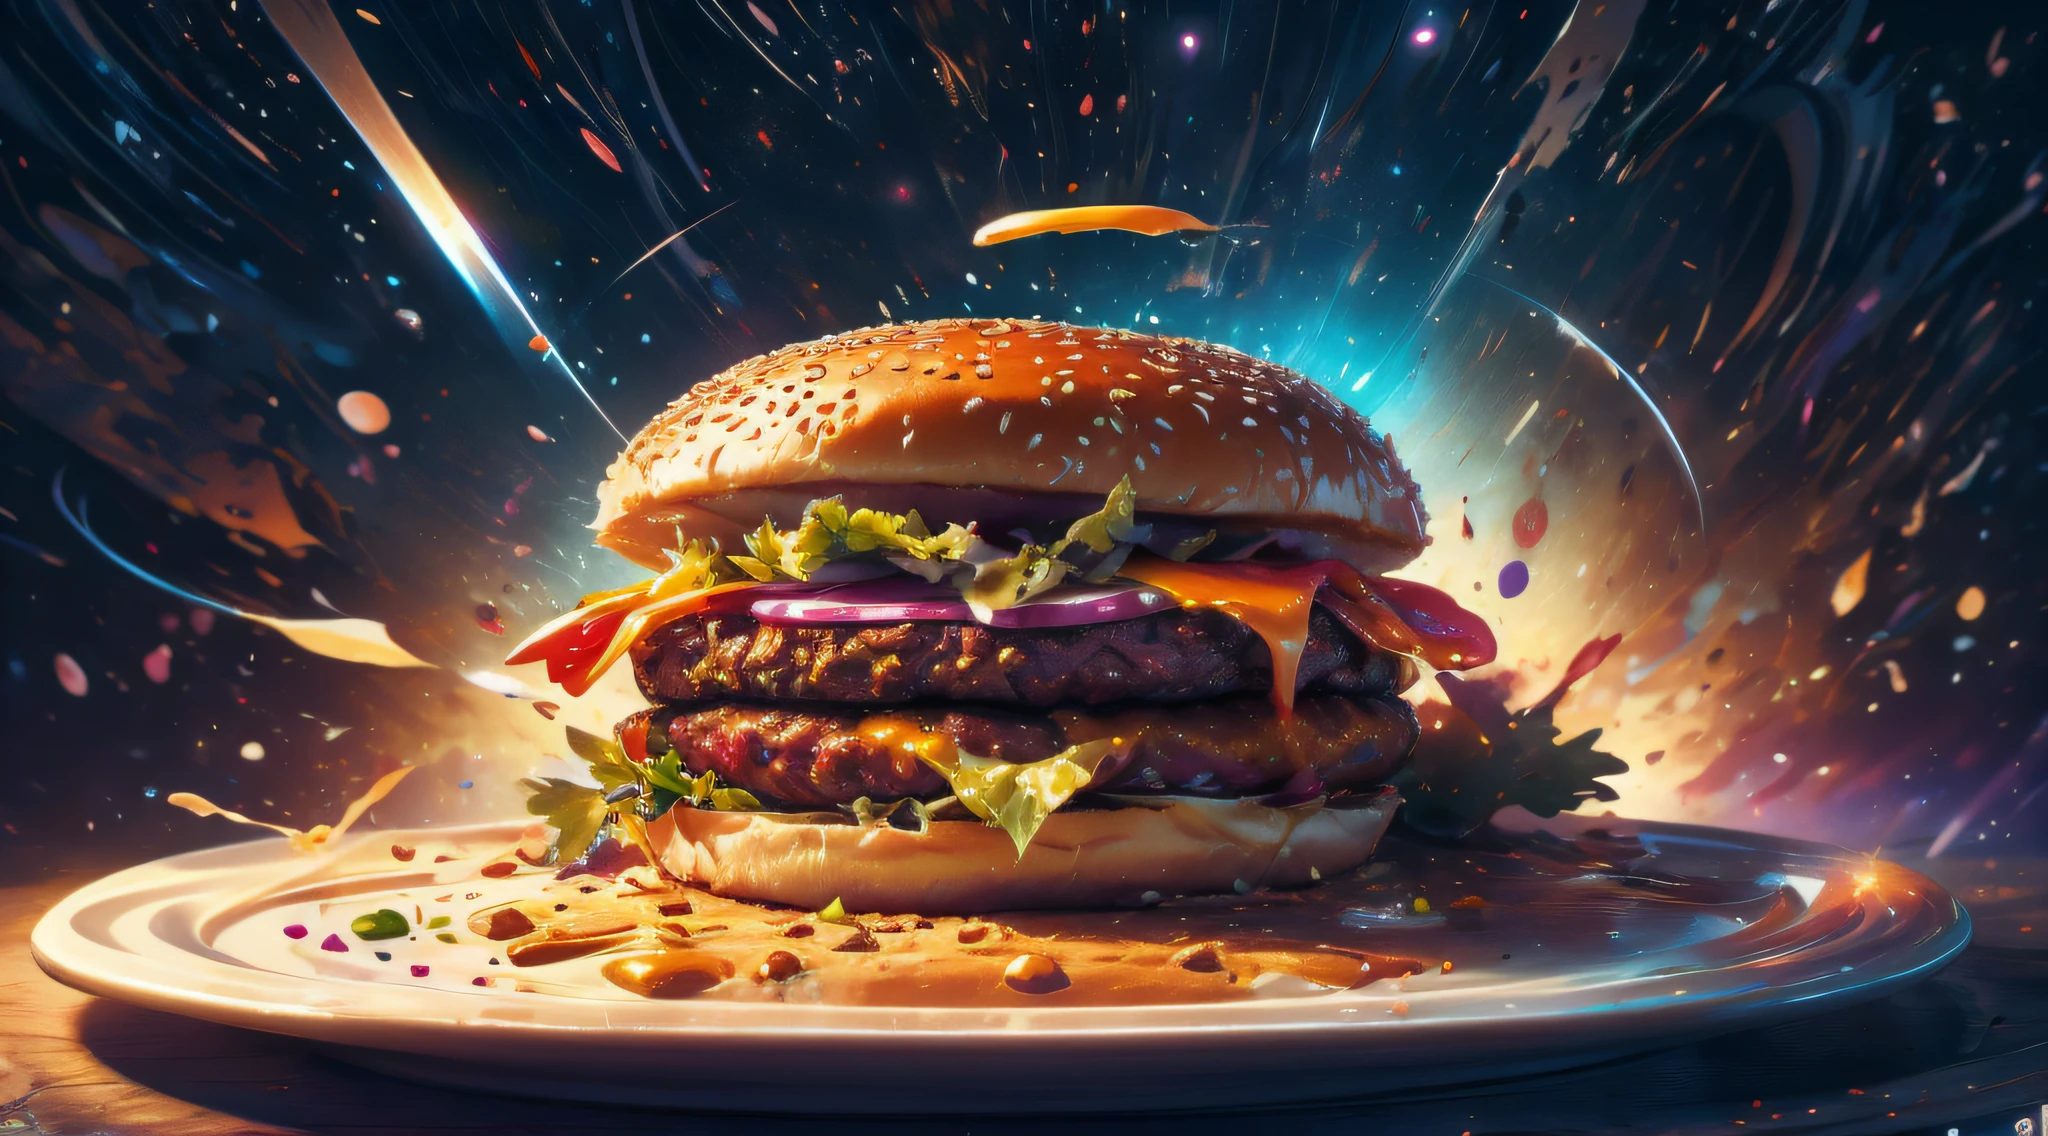 銀河と星雲でできたハンバーガー, コスモスの皿に座っている, 三分割法, 最高の詳細, 複雑な, 豊かな気分, 想像力豊かな写真,